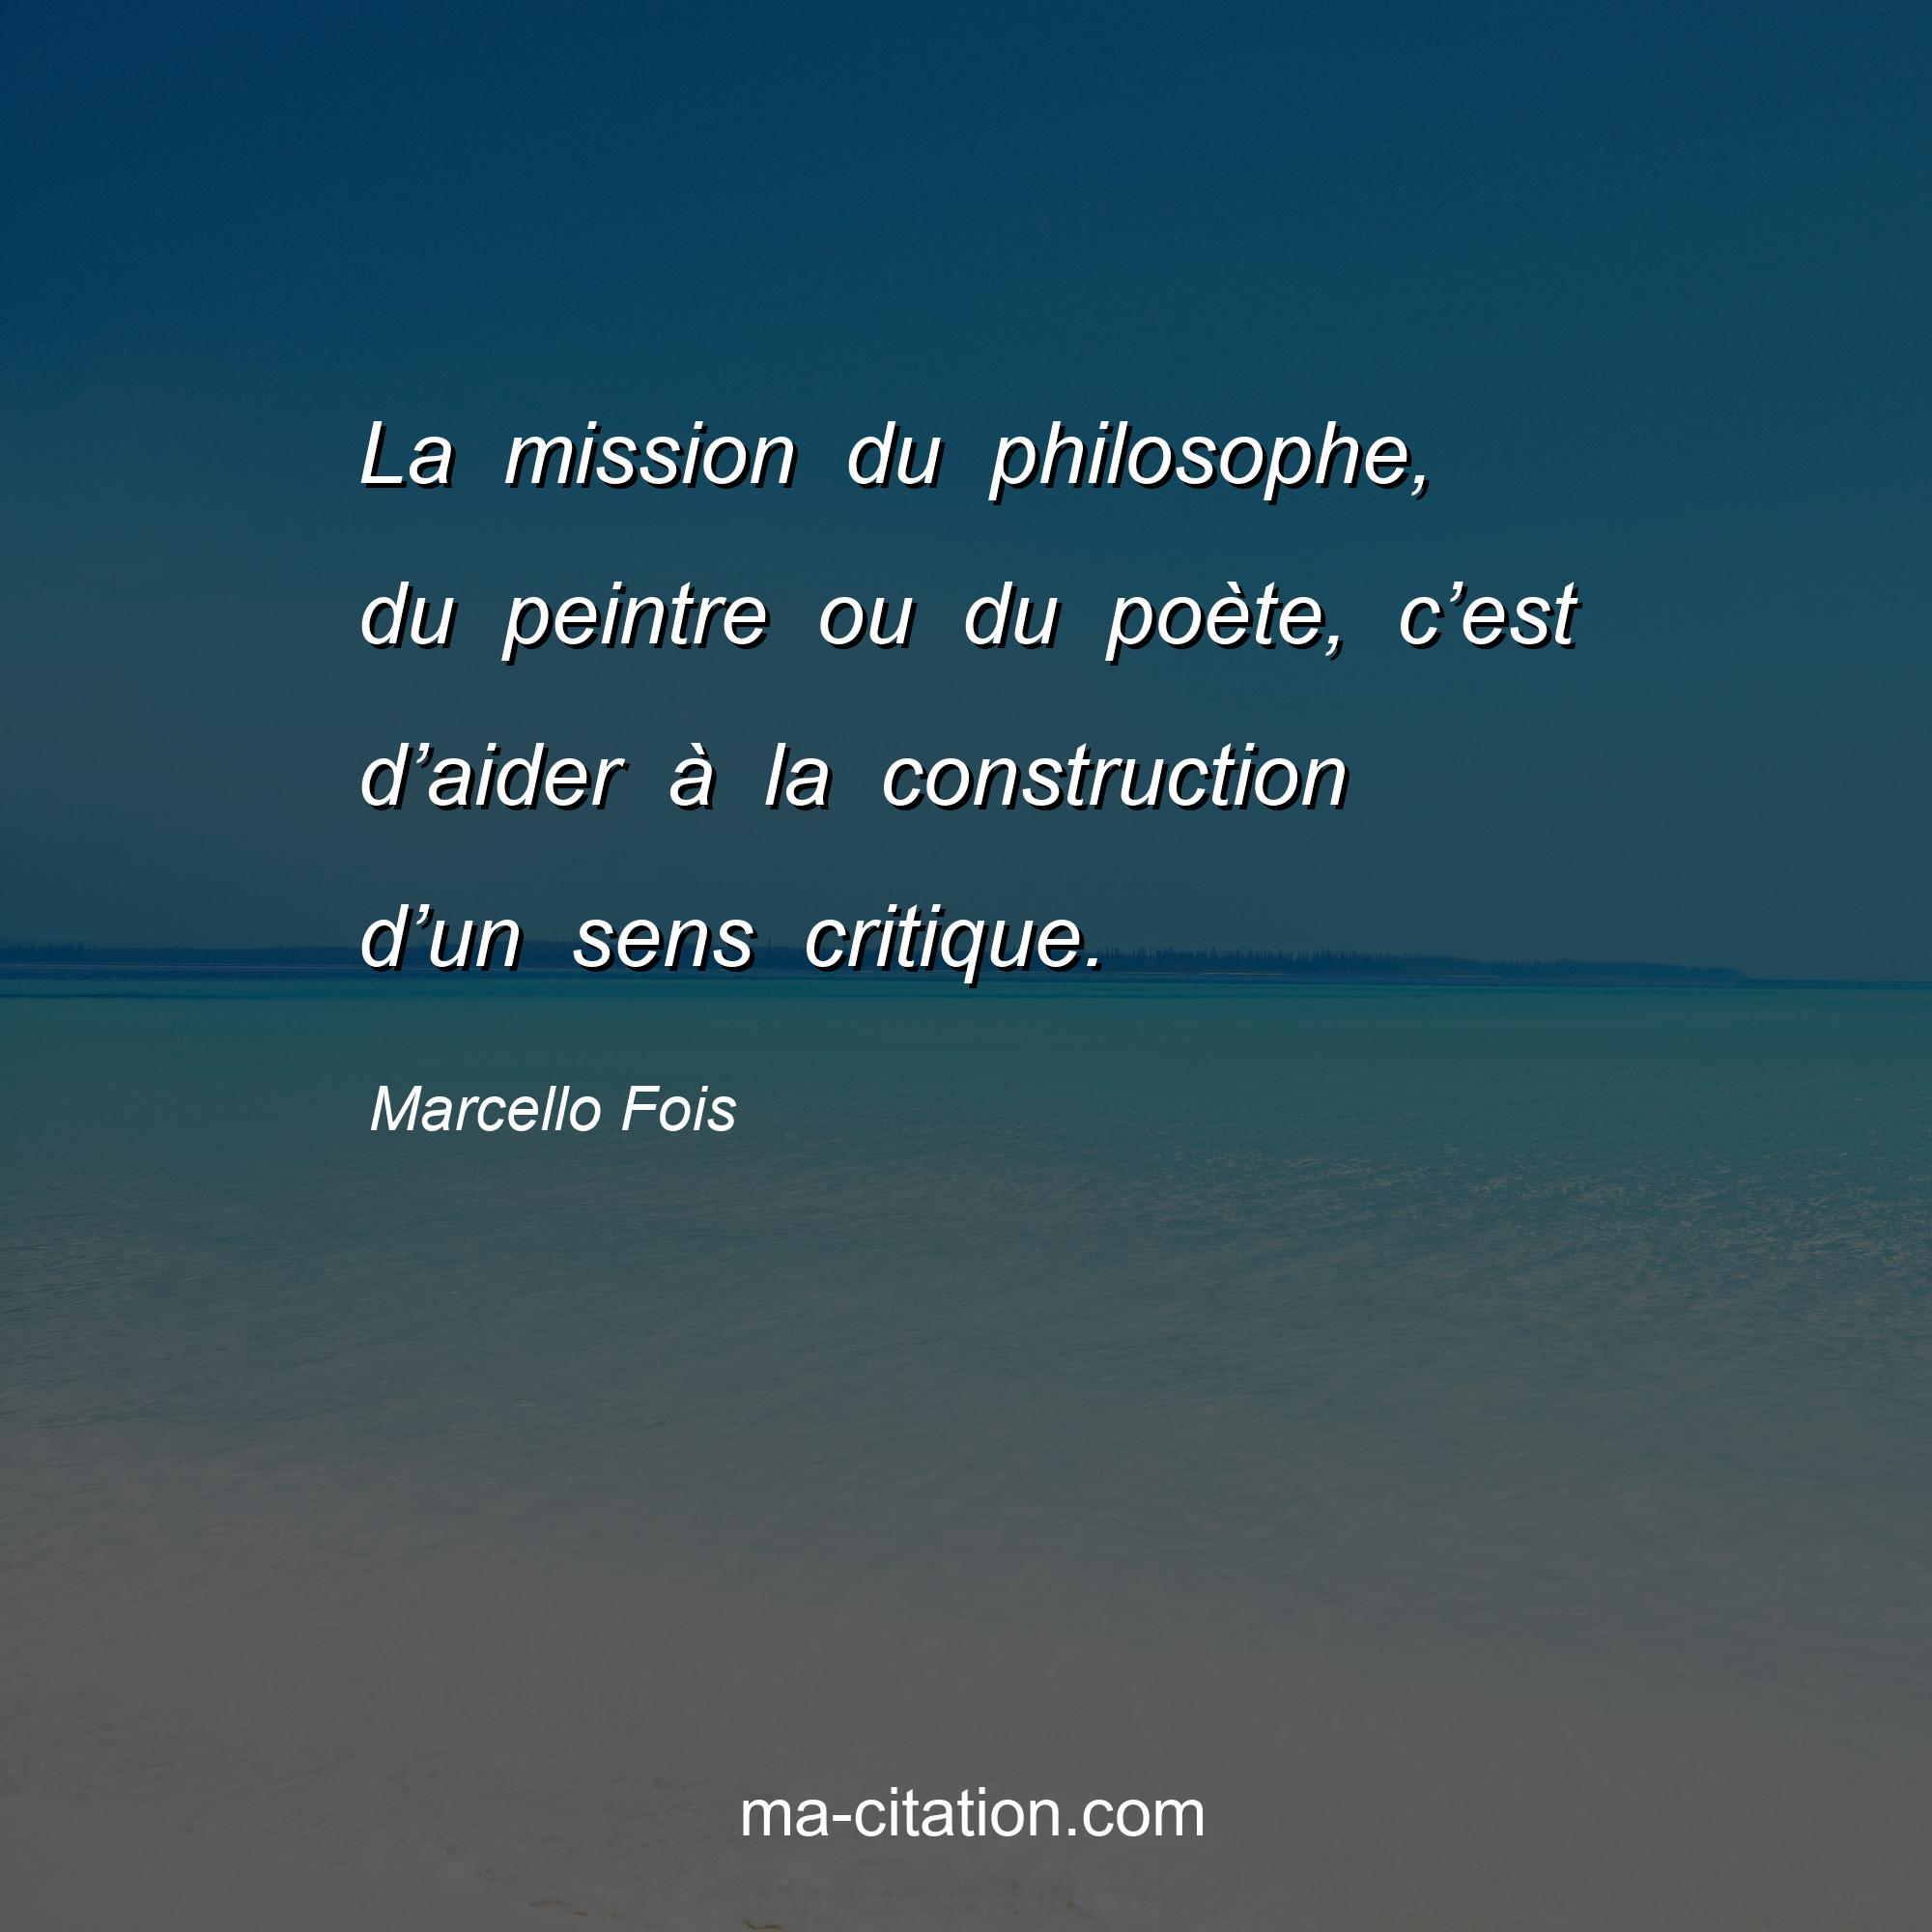 Marcello Fois : La mission du philosophe, du peintre ou du poète, c’est d’aider à la construction d’un sens critique.